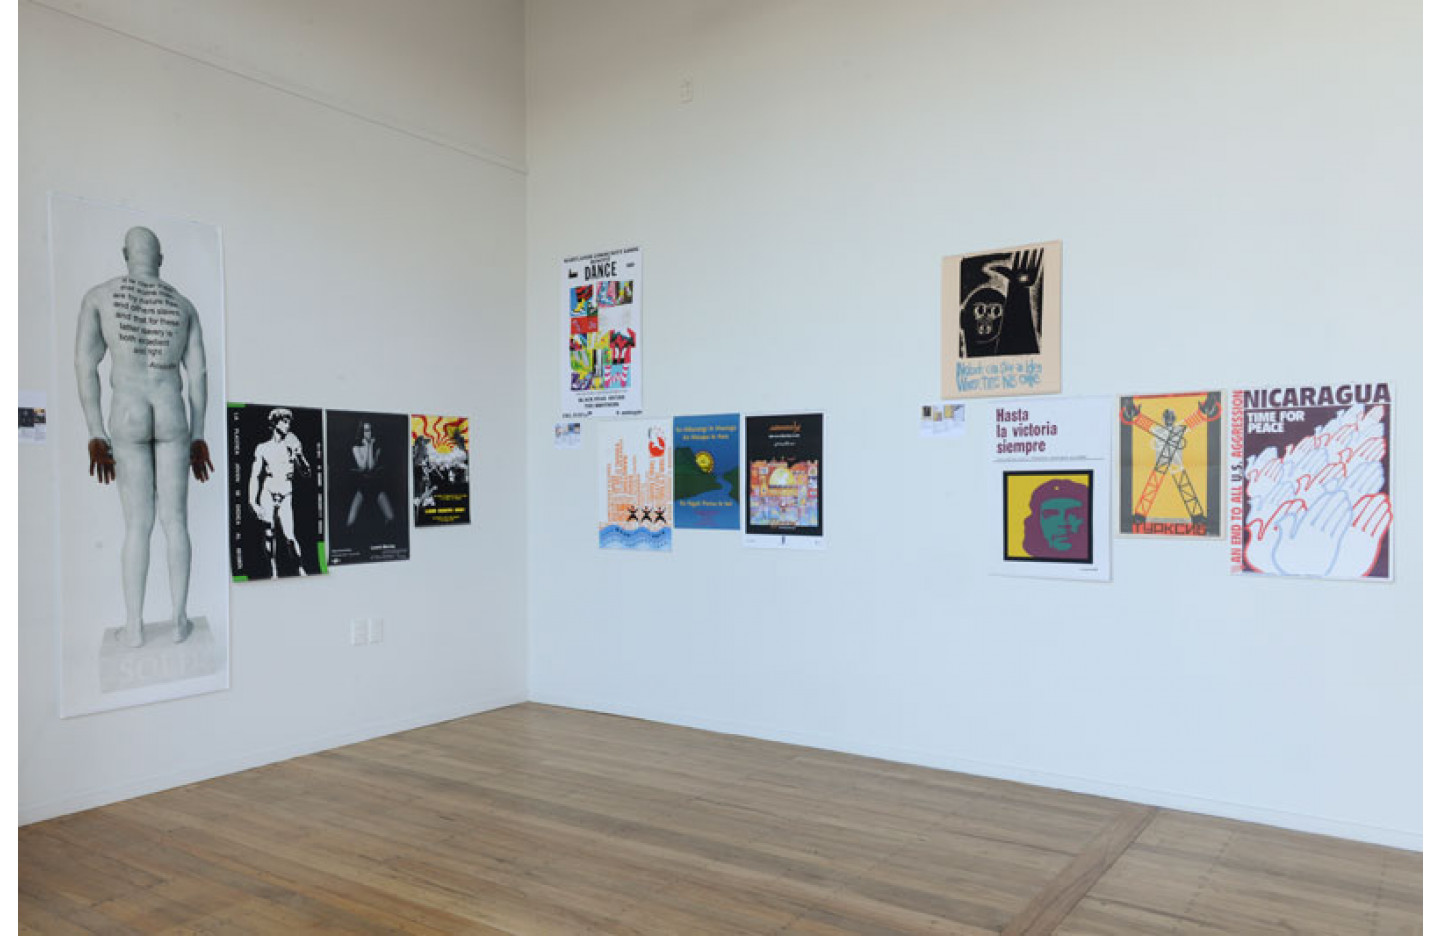 Installation Image of "4x3", Ramp Gallery Jul 2014. Including: Chris McBride, John Mandelberg, John Phillips and Xavier Meade